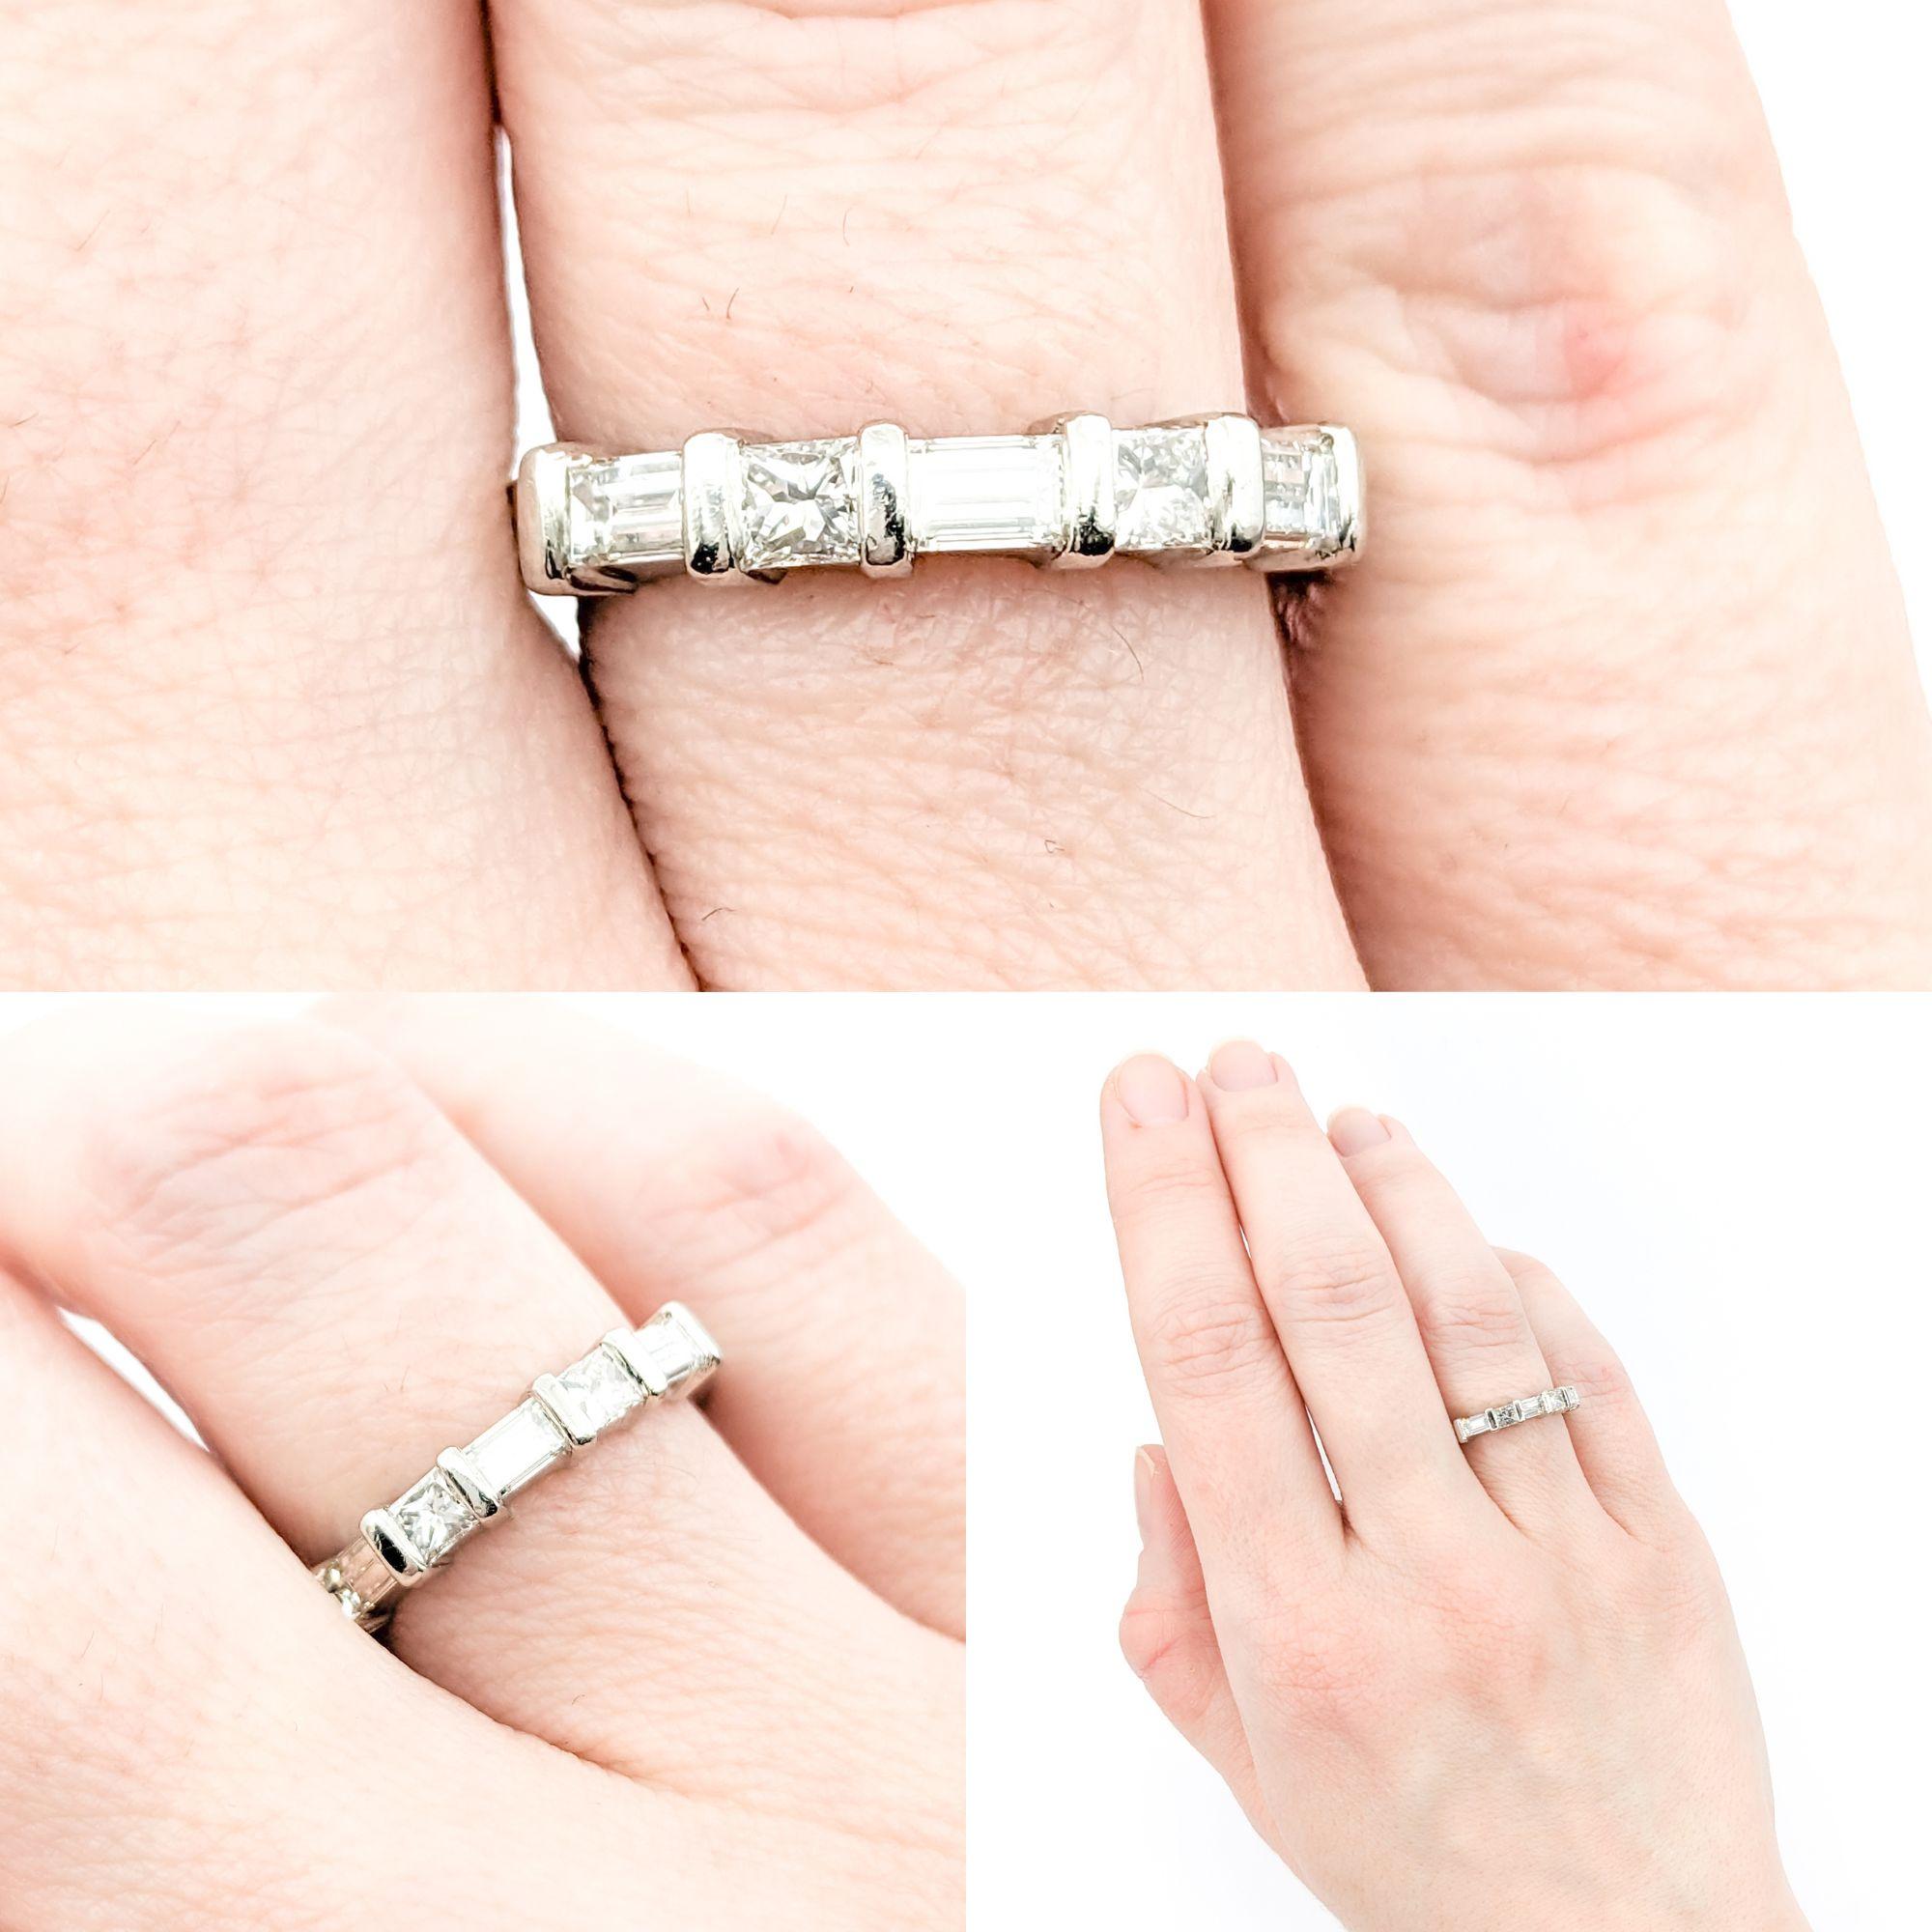 Chic .60ctw Prinzessin & Baugette Diamantband aus Platin

Unser atemberaubender, stapelbarer Ring wurde fachmännisch aus luxuriösem 950pt Platin gefertigt. Mit einem Gesamtkaratgewicht von 0,60 ct, bestehend aus Diamanten im Prinzess- und